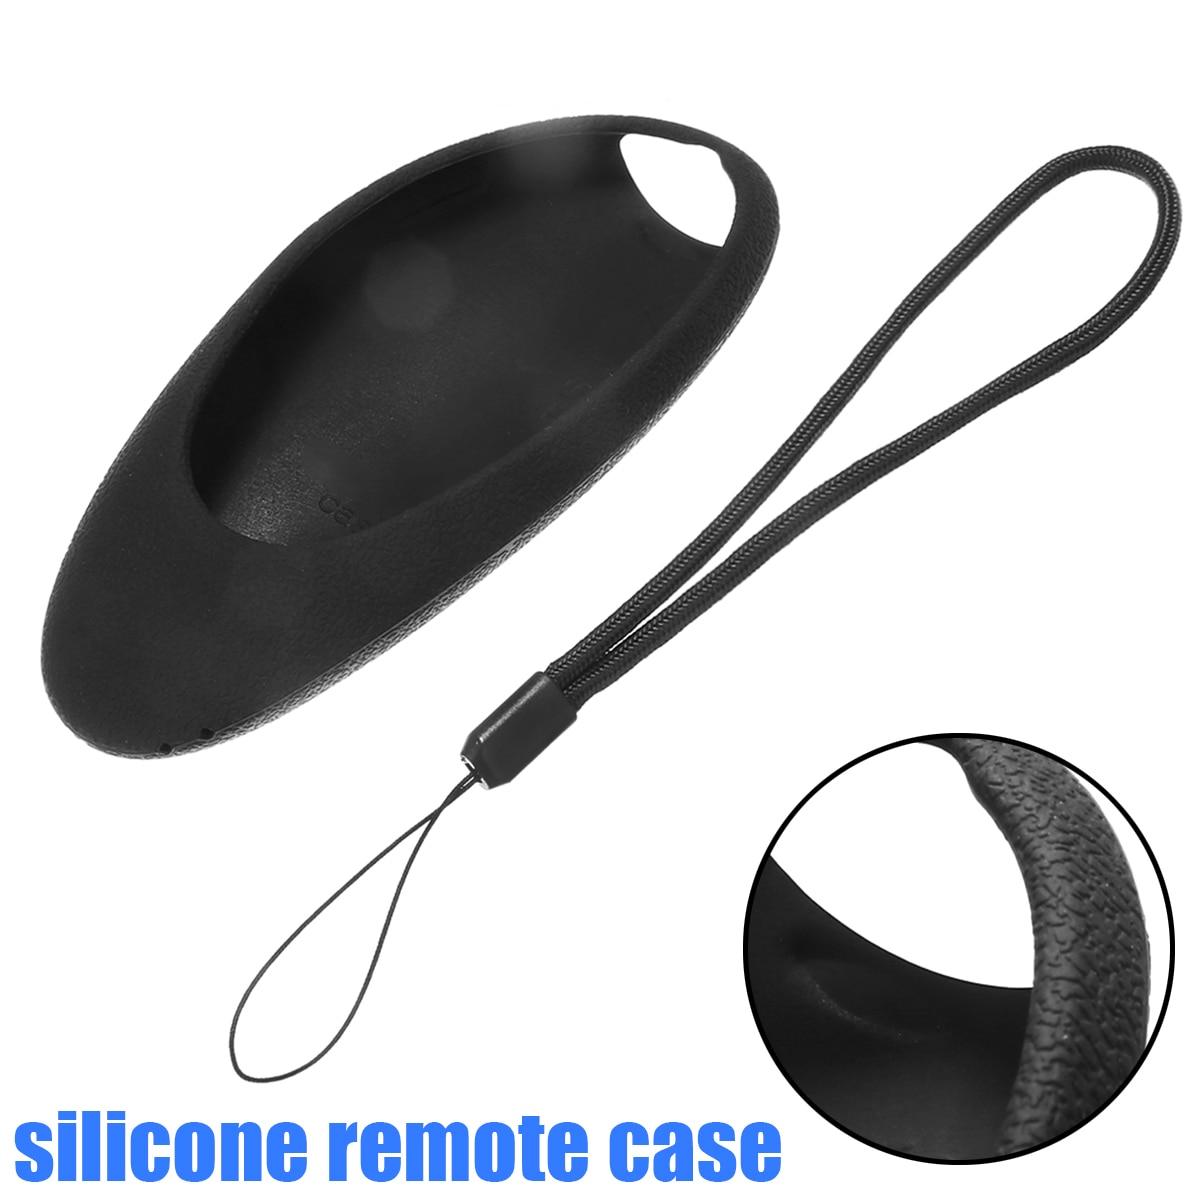 Remote Control Silicone Case For Samsung Smart TV Remote BN59-01181B, BN59-01182B, BN59-01184B, BN59-01185B Remote Cover